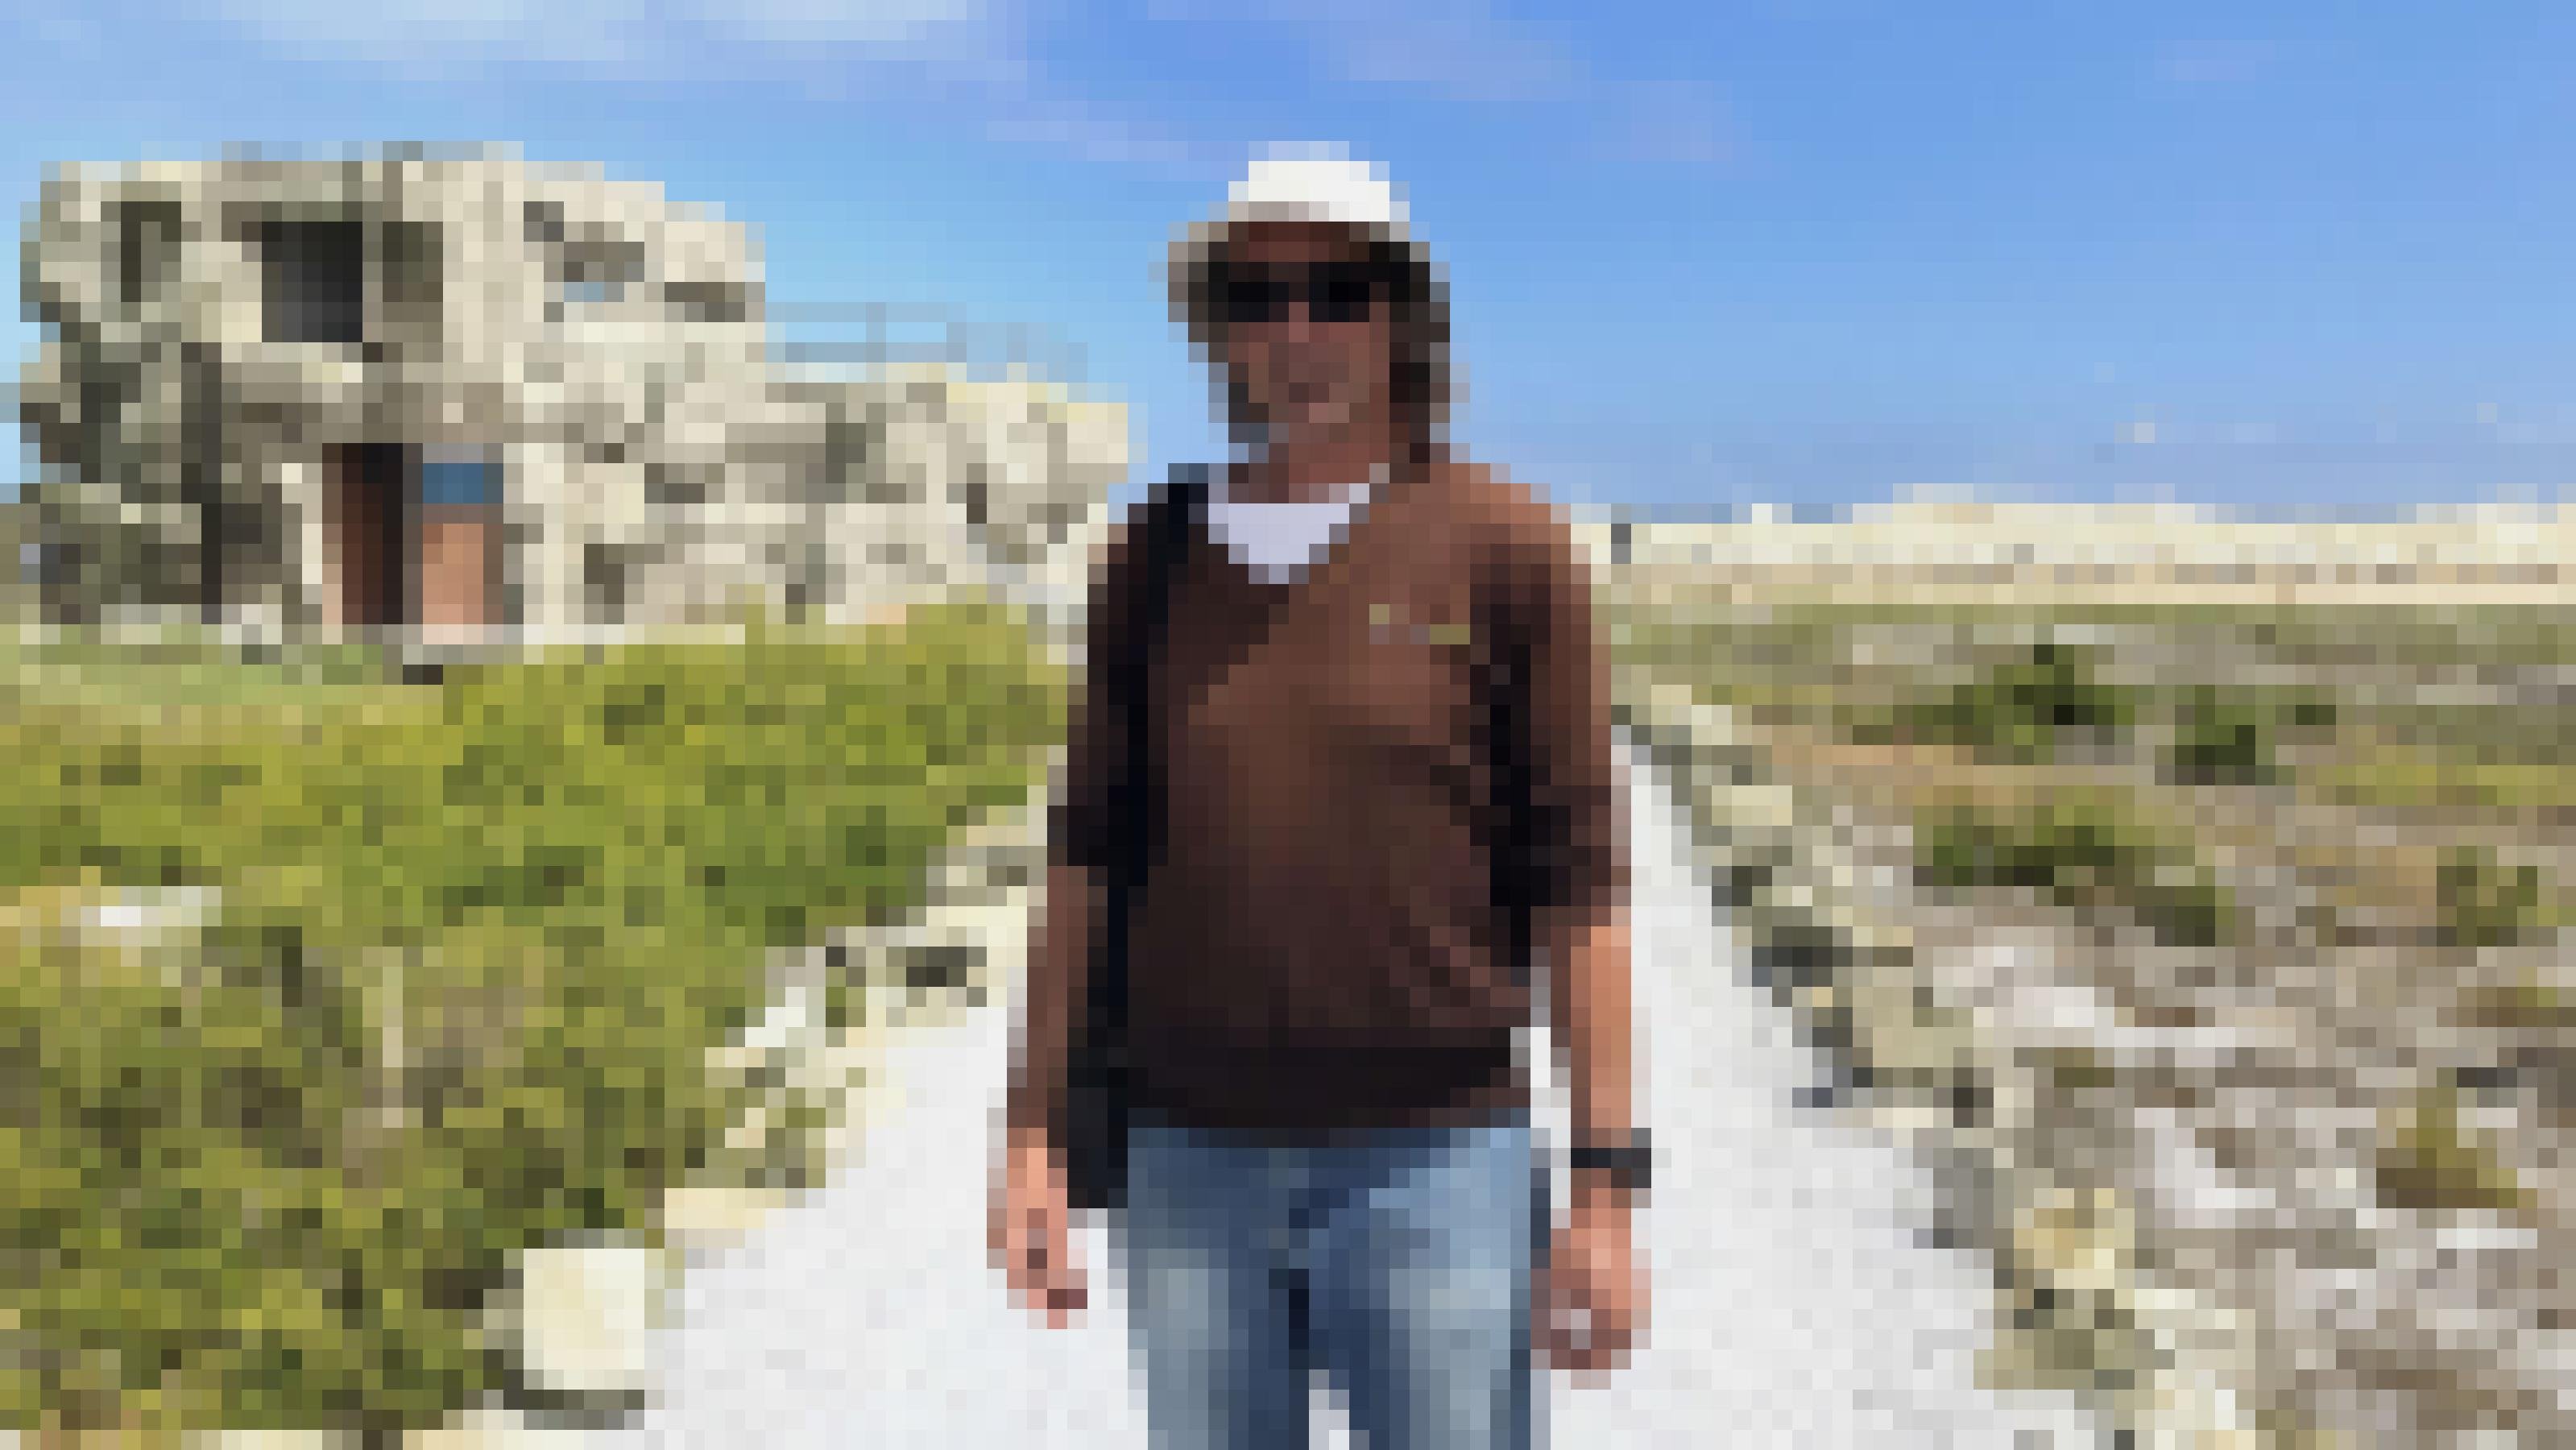 Ein Mann im braunen Pulli mit Mütze und Sonnenbrille steht auf einem Weg, der zu einem zweistöckigen Gebäude führt, das als Felsen getarnt ist.